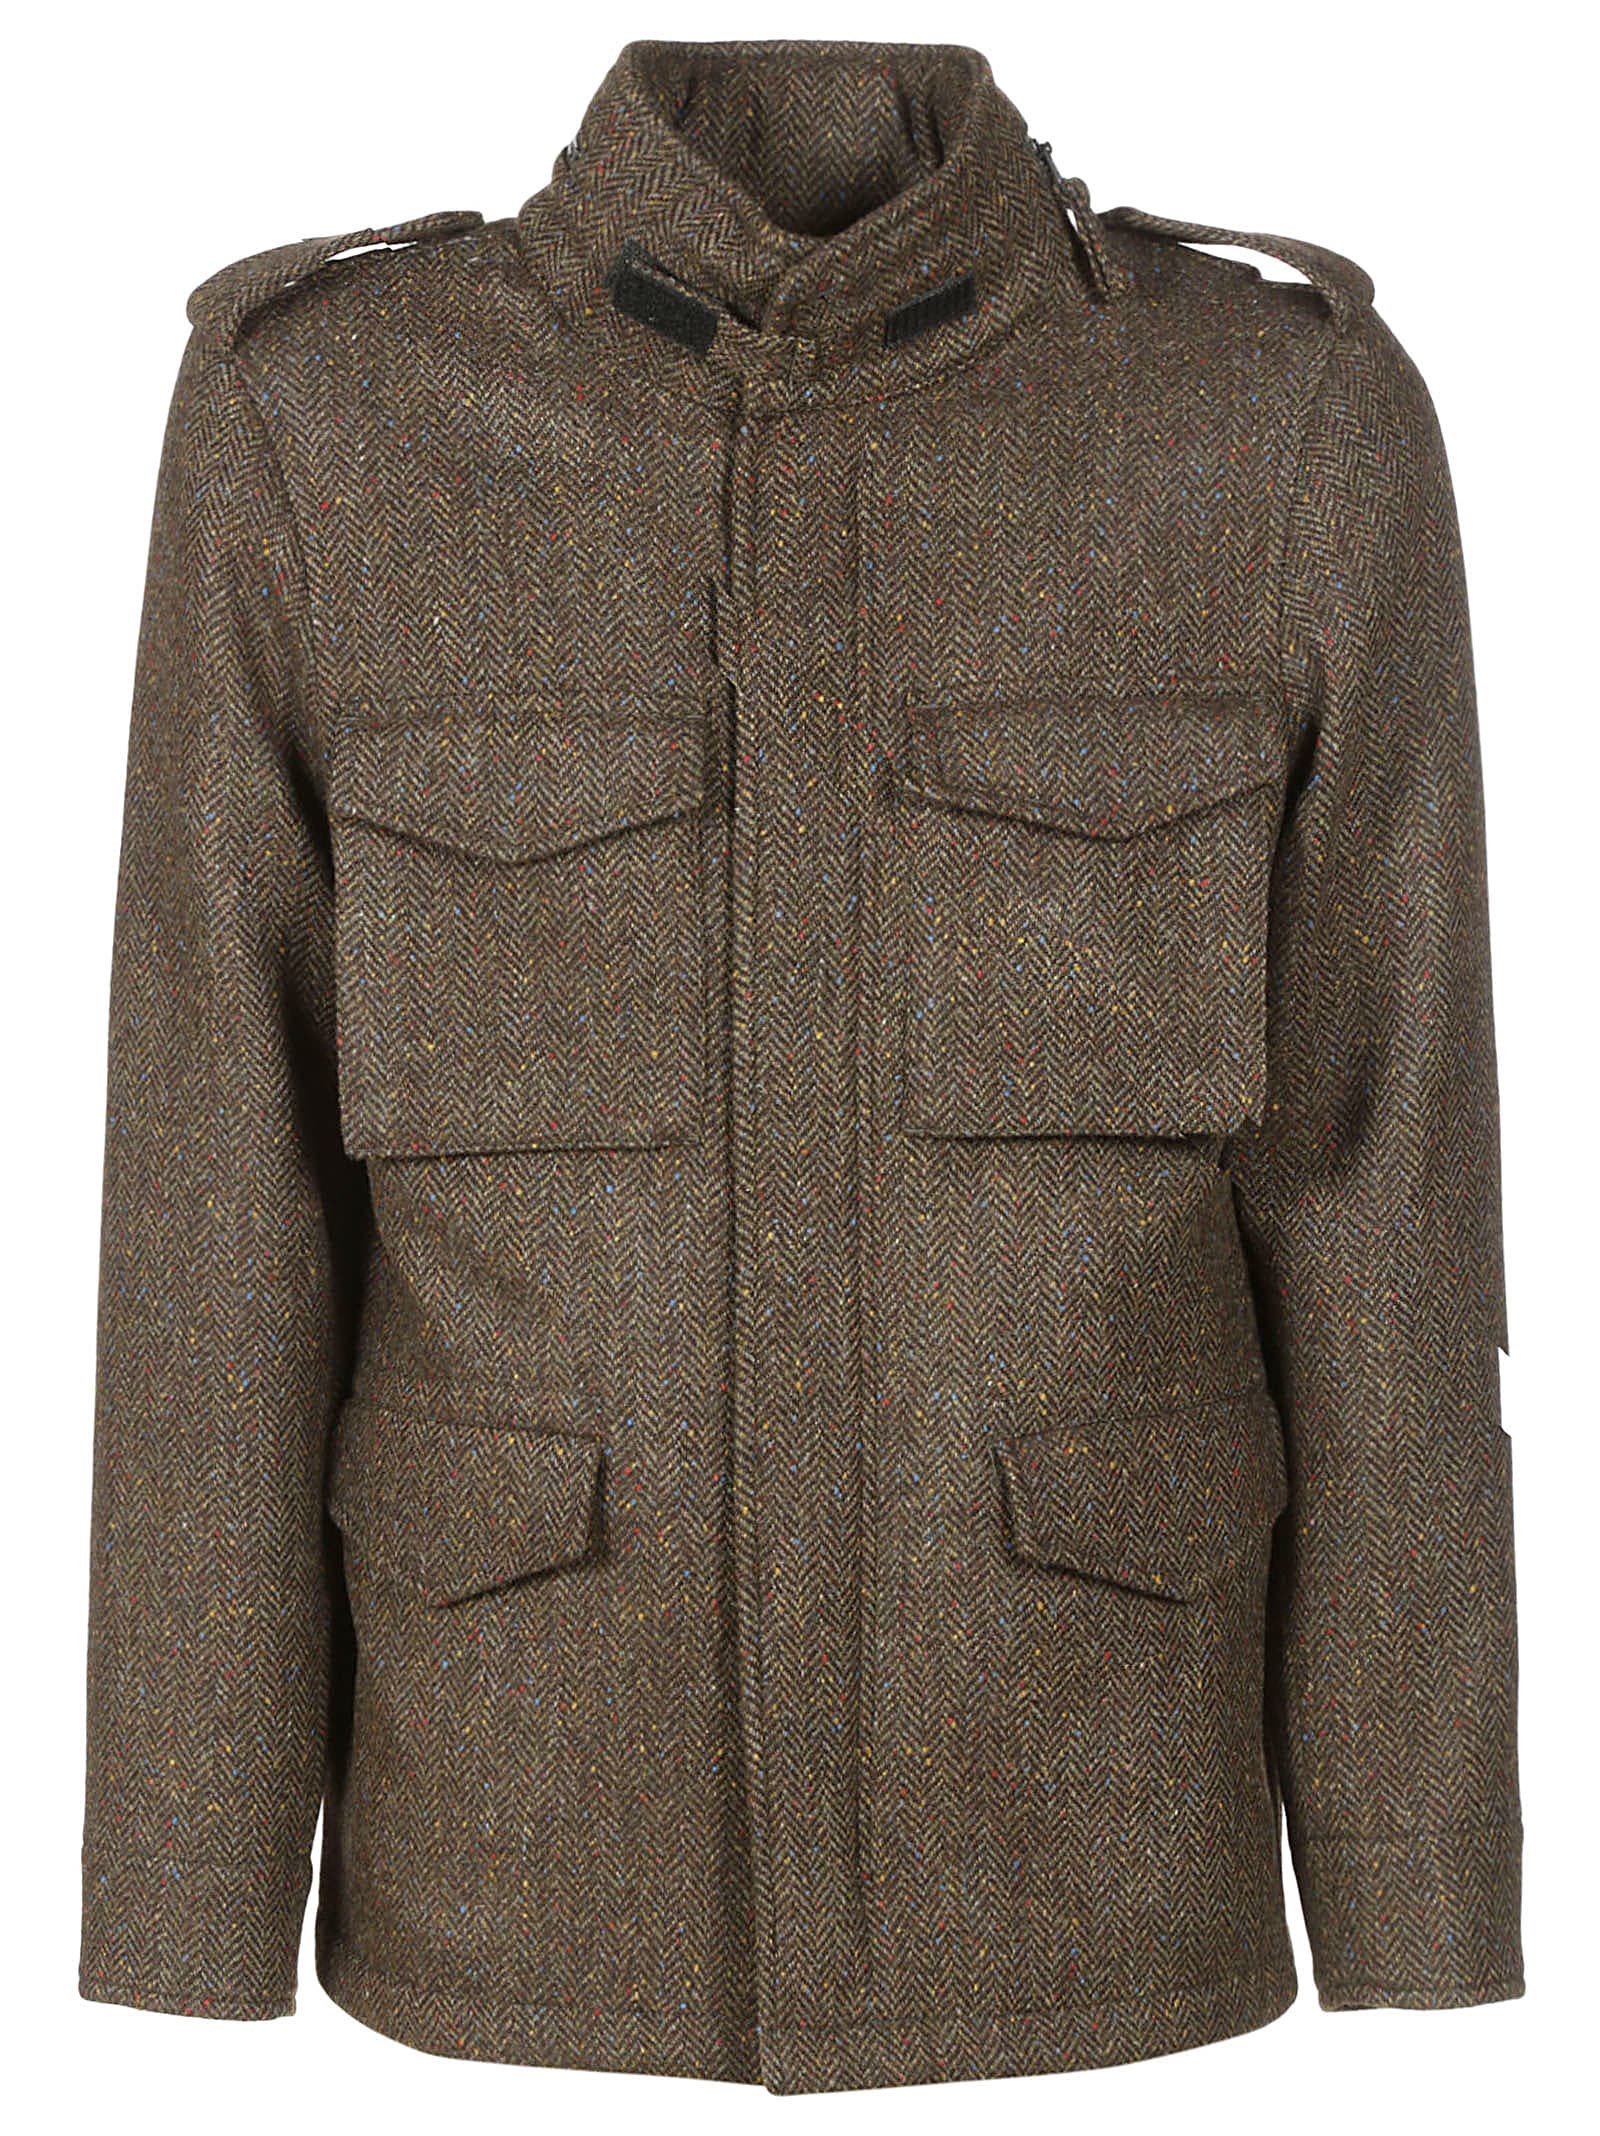 Aspesi Minifield Tweed Jacket